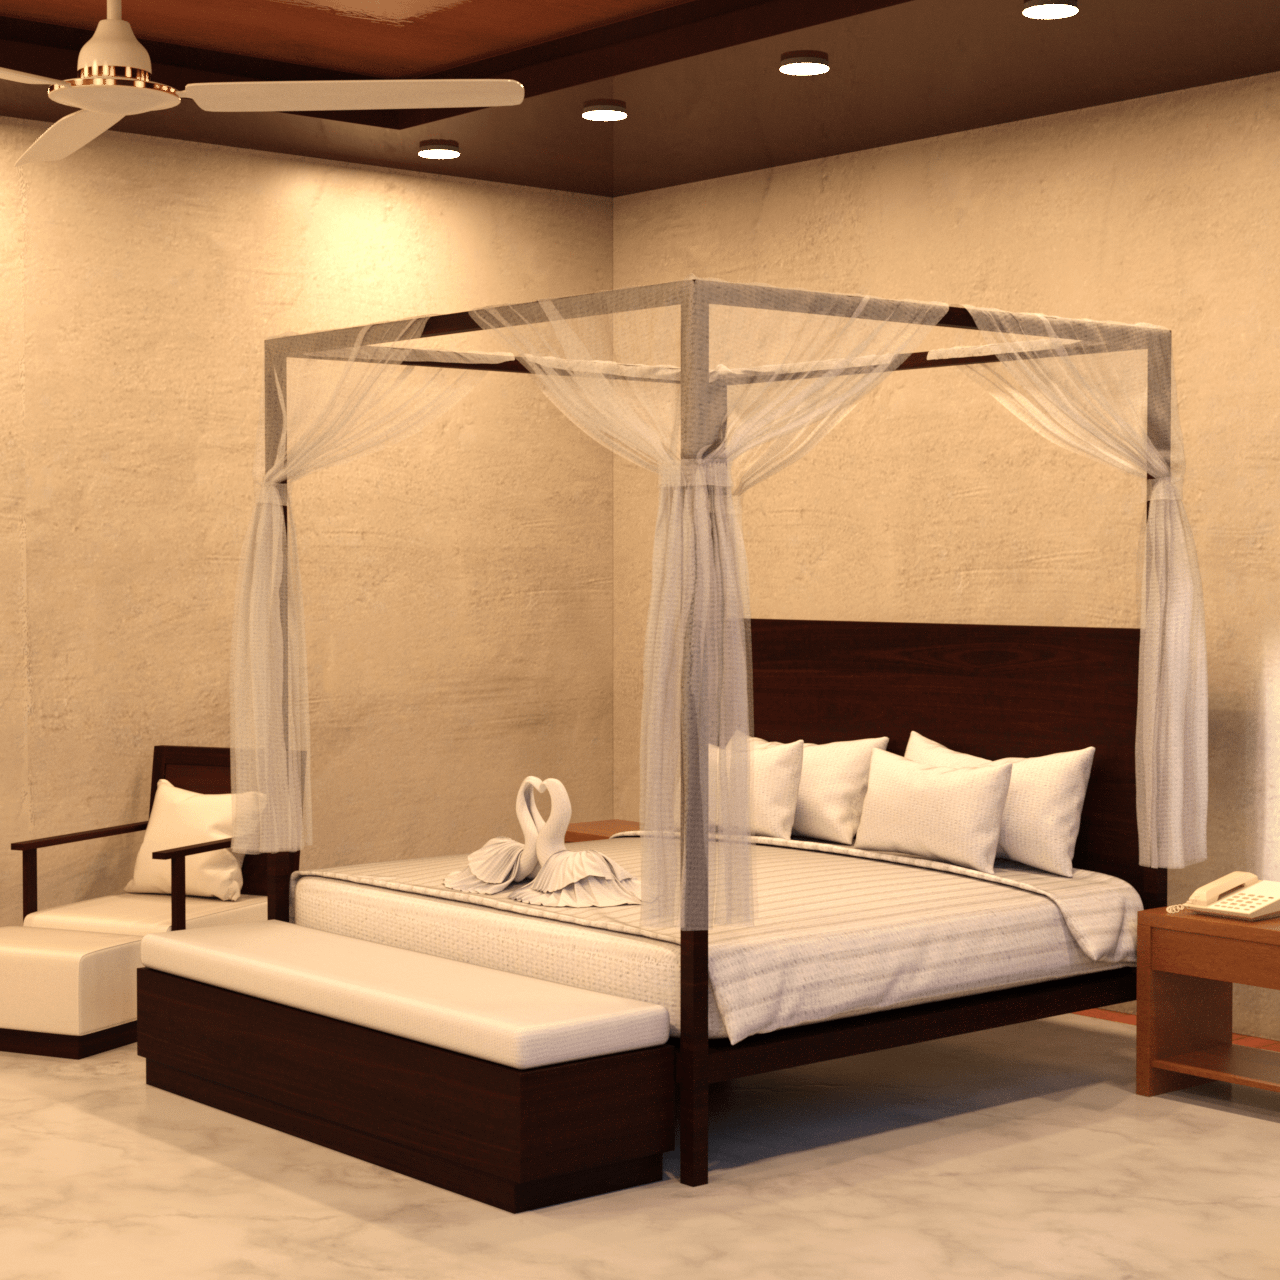 Luxury bedroom 3d model